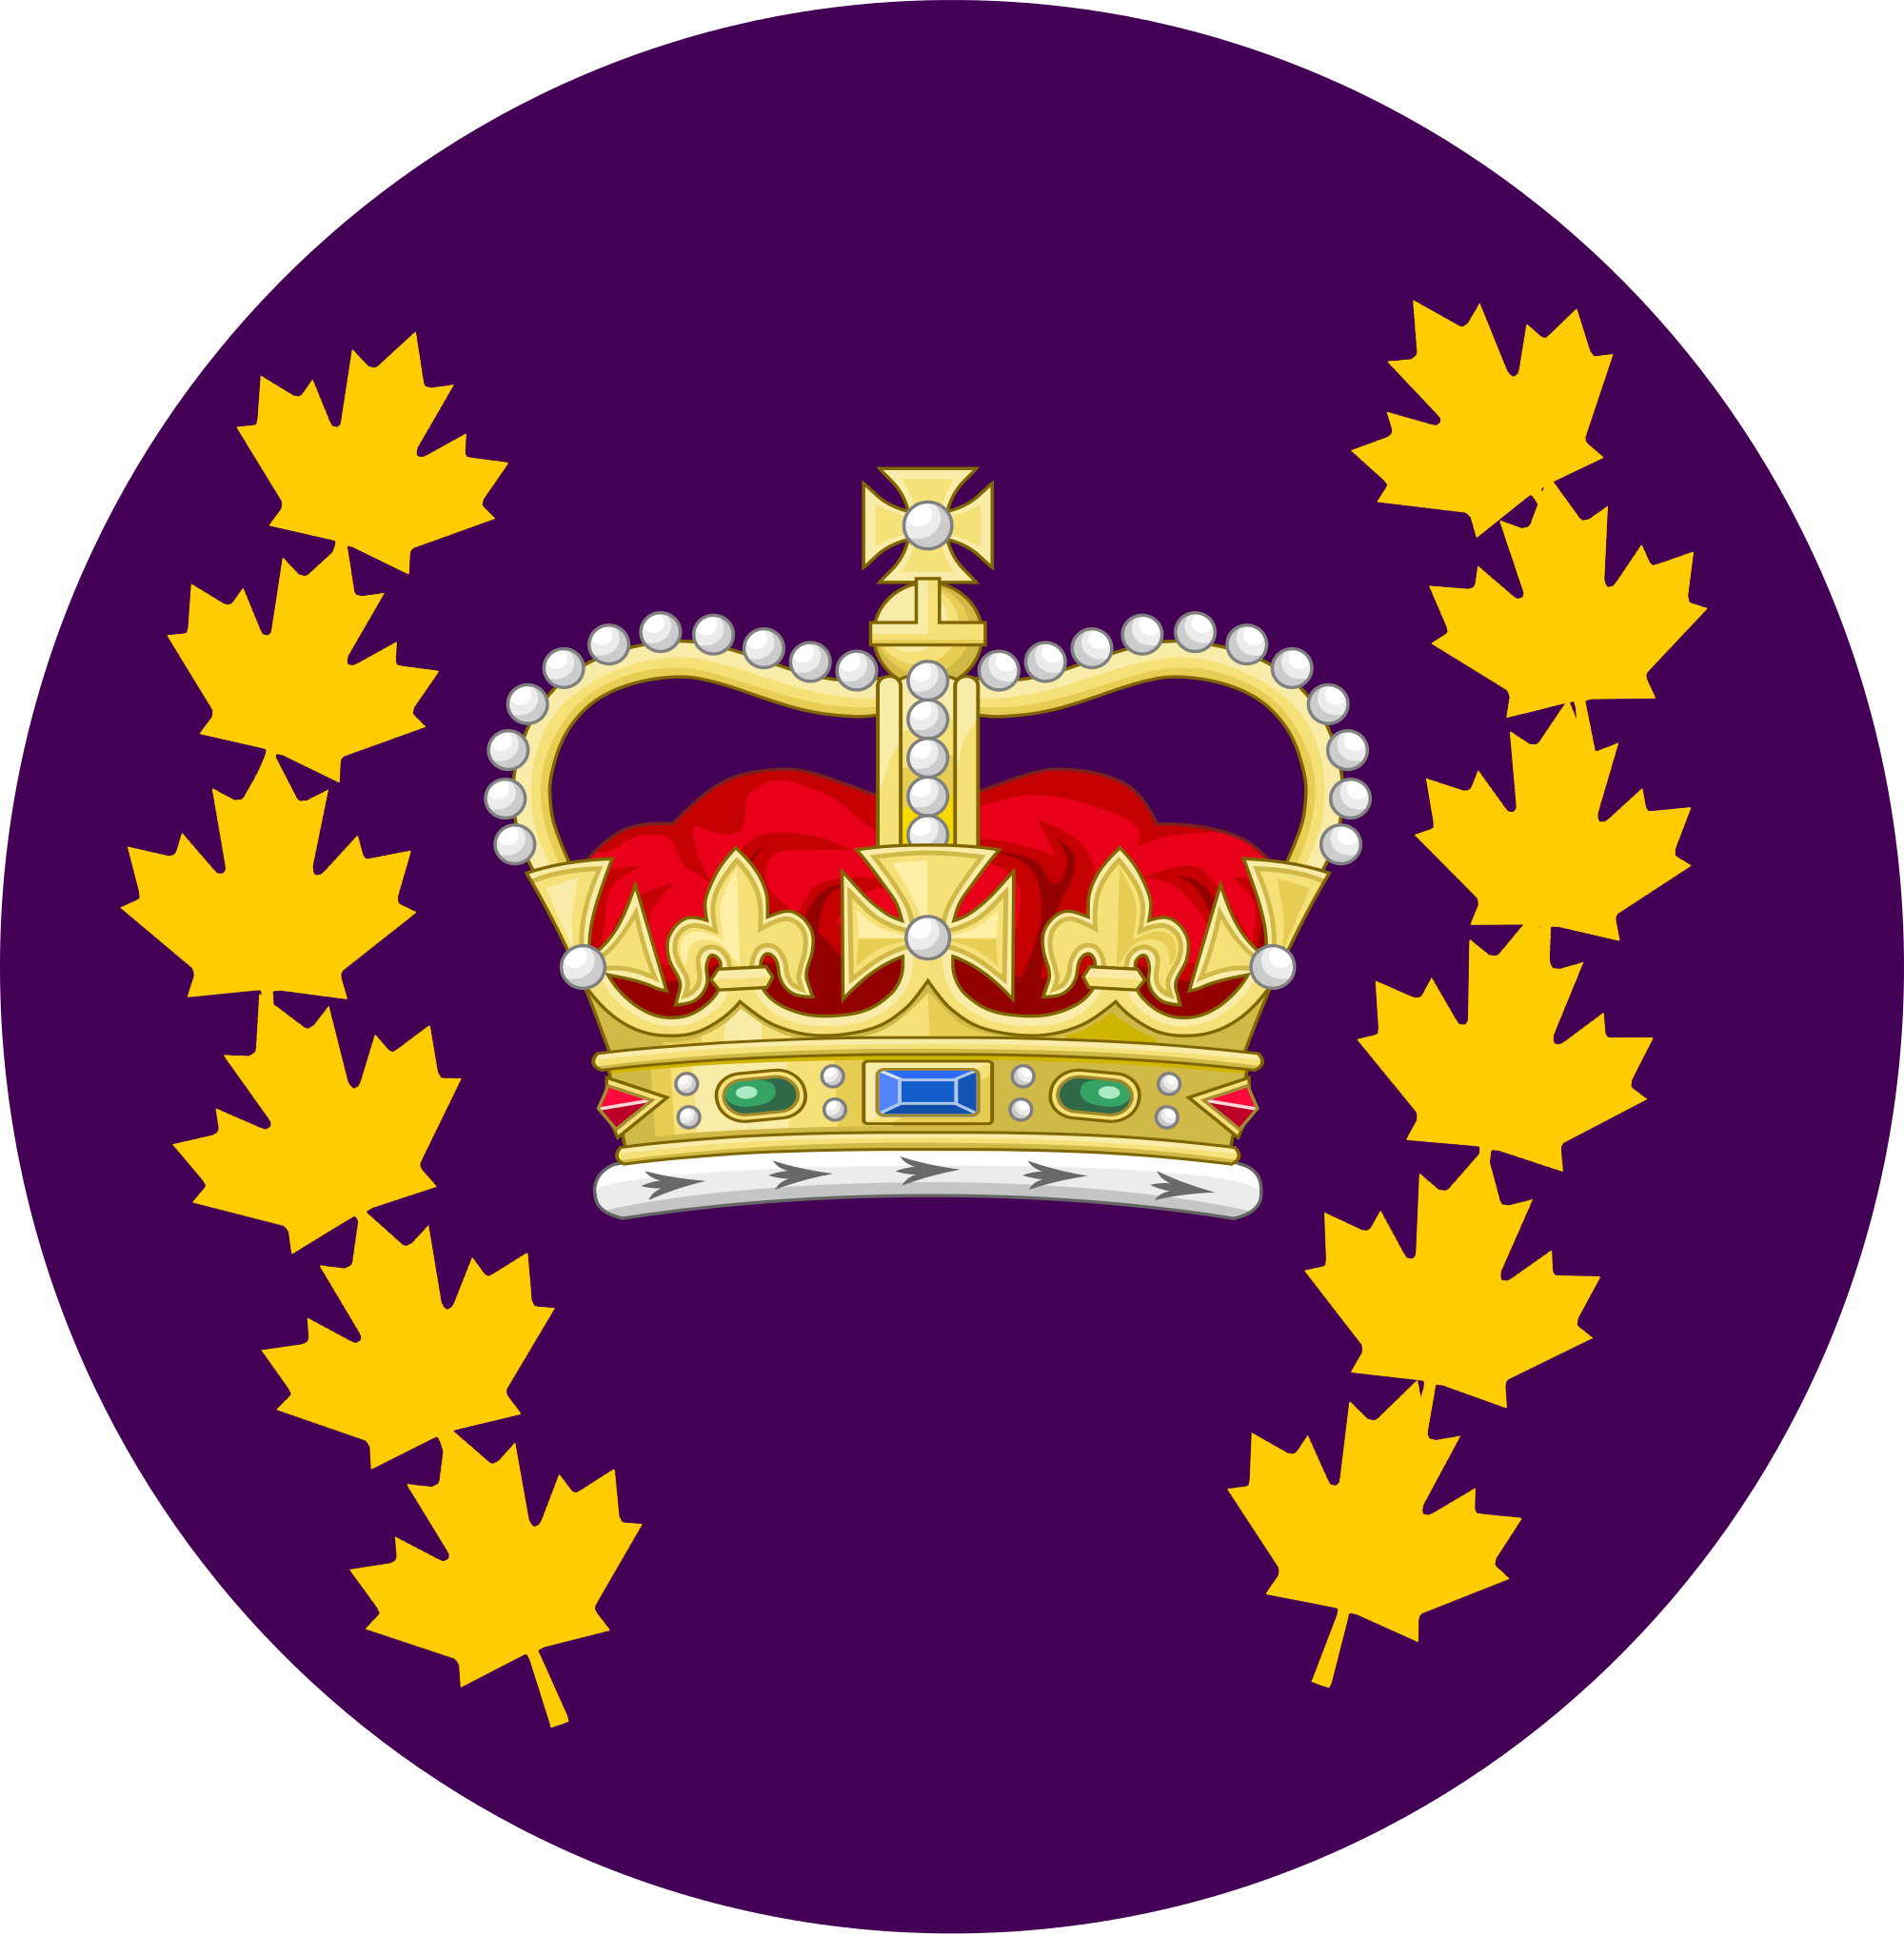 File:RCMP logo.png